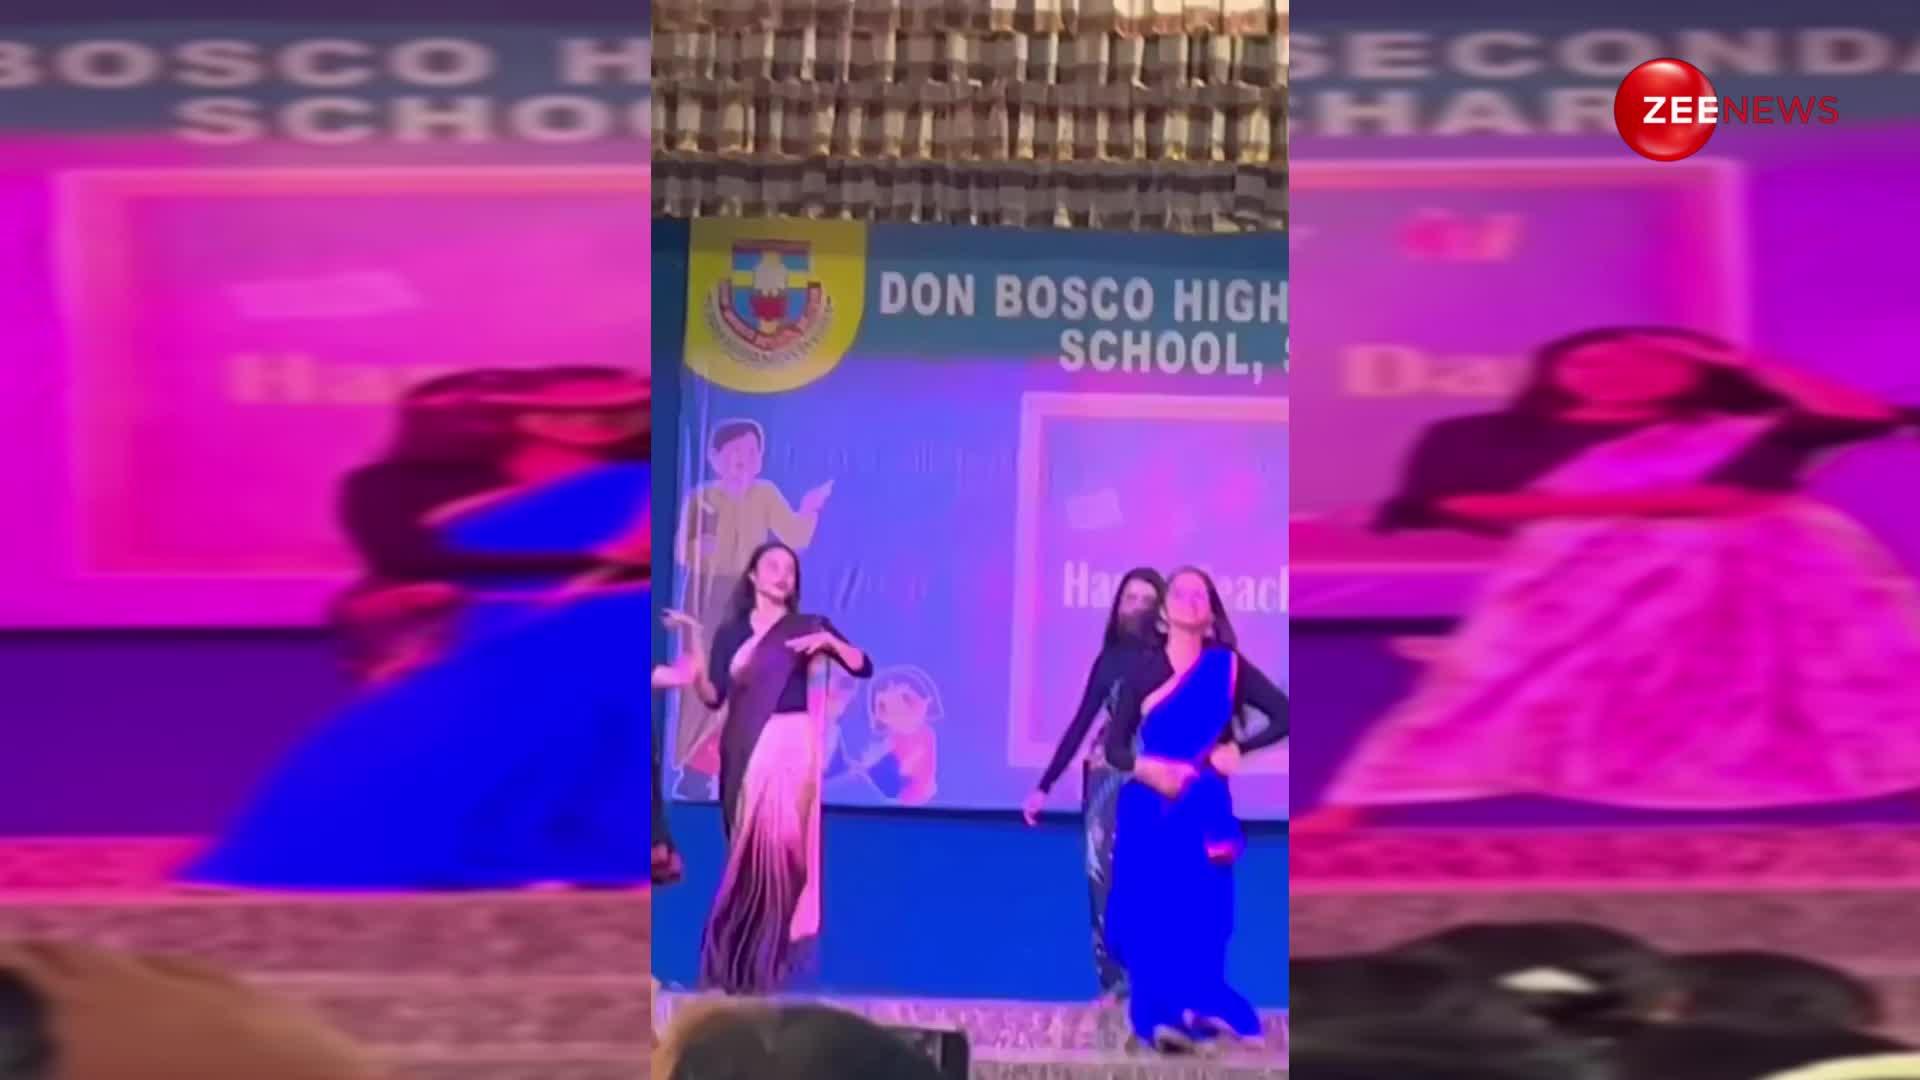 'Chammak challo' गाने पर कॉलेज की लड़कियों ने दिखाया इतना धमाकेदार डांस, देख चकित रह गए प्रोफेसर